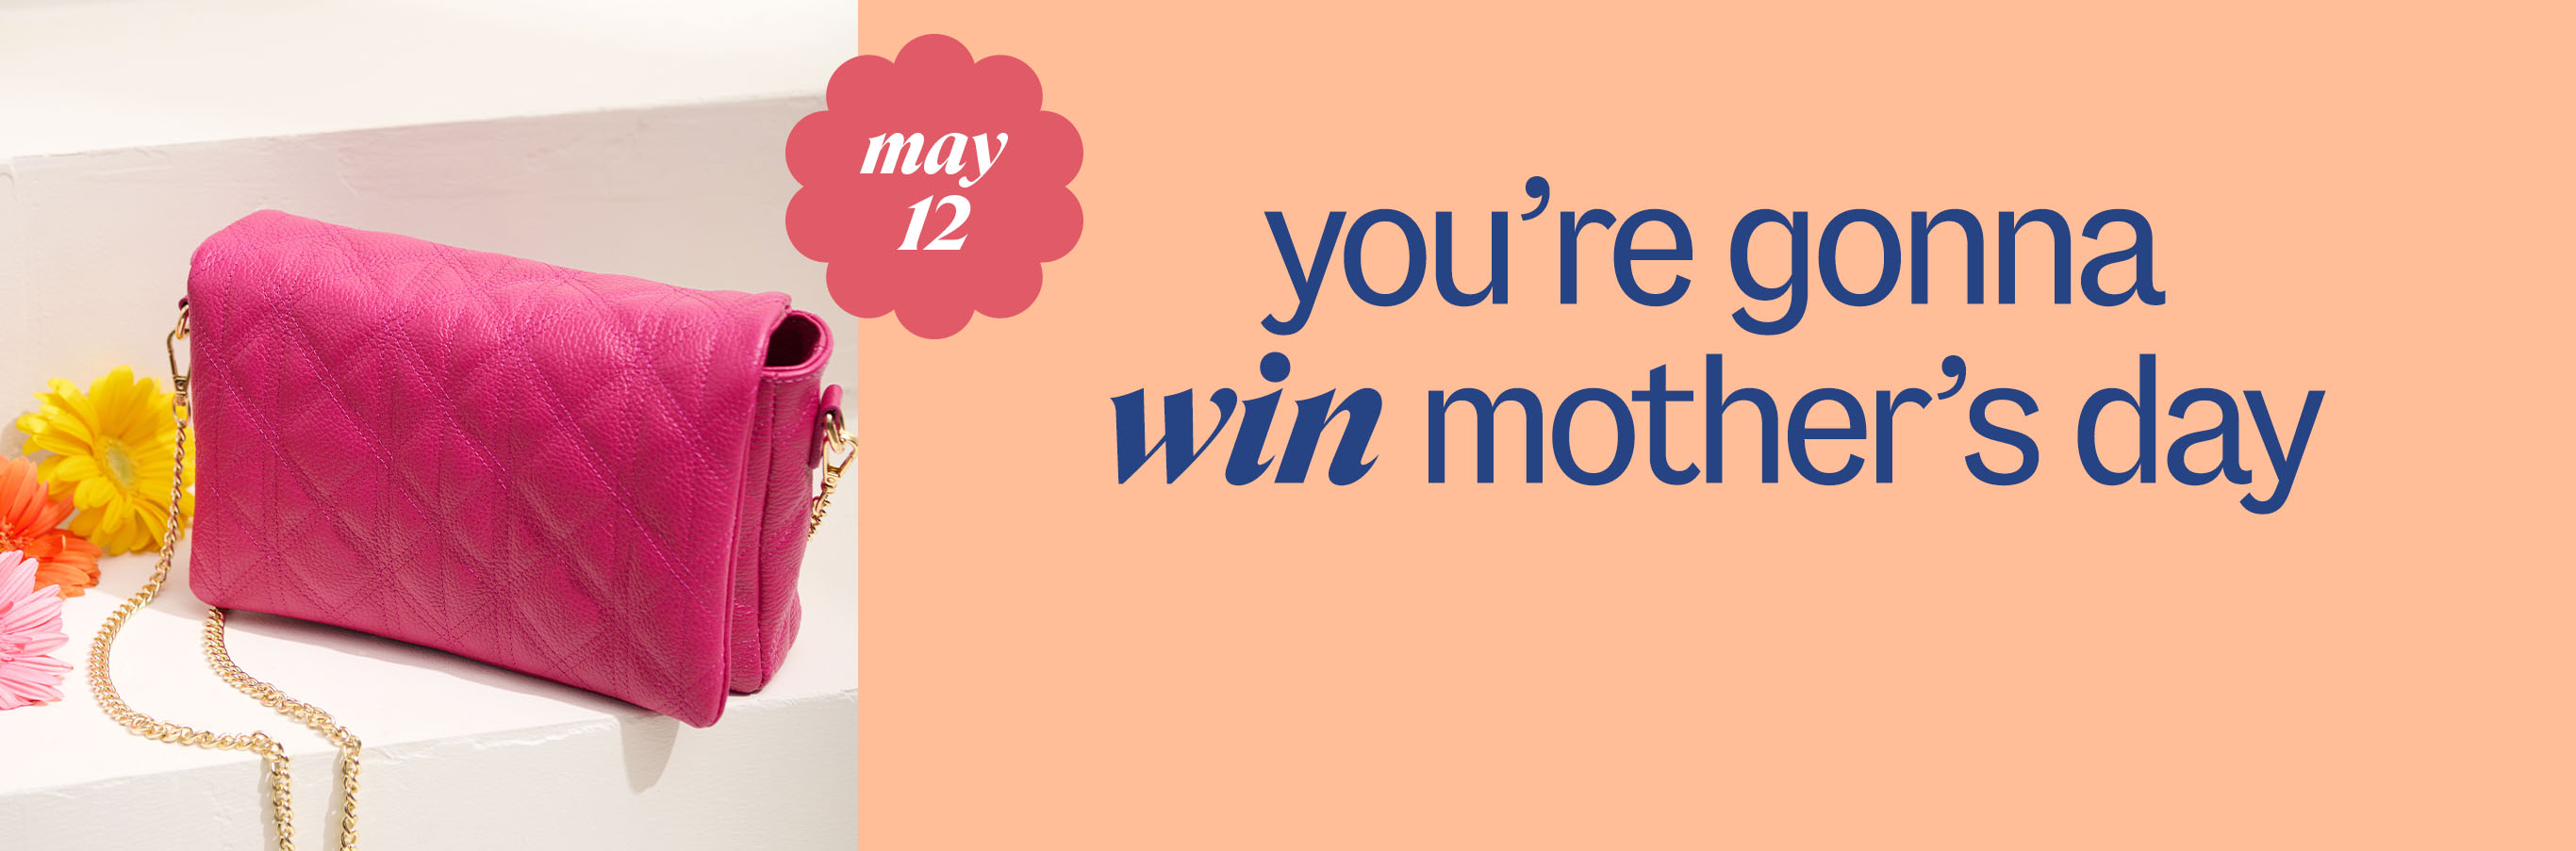 (may 12) youâre gonna win motherâs day